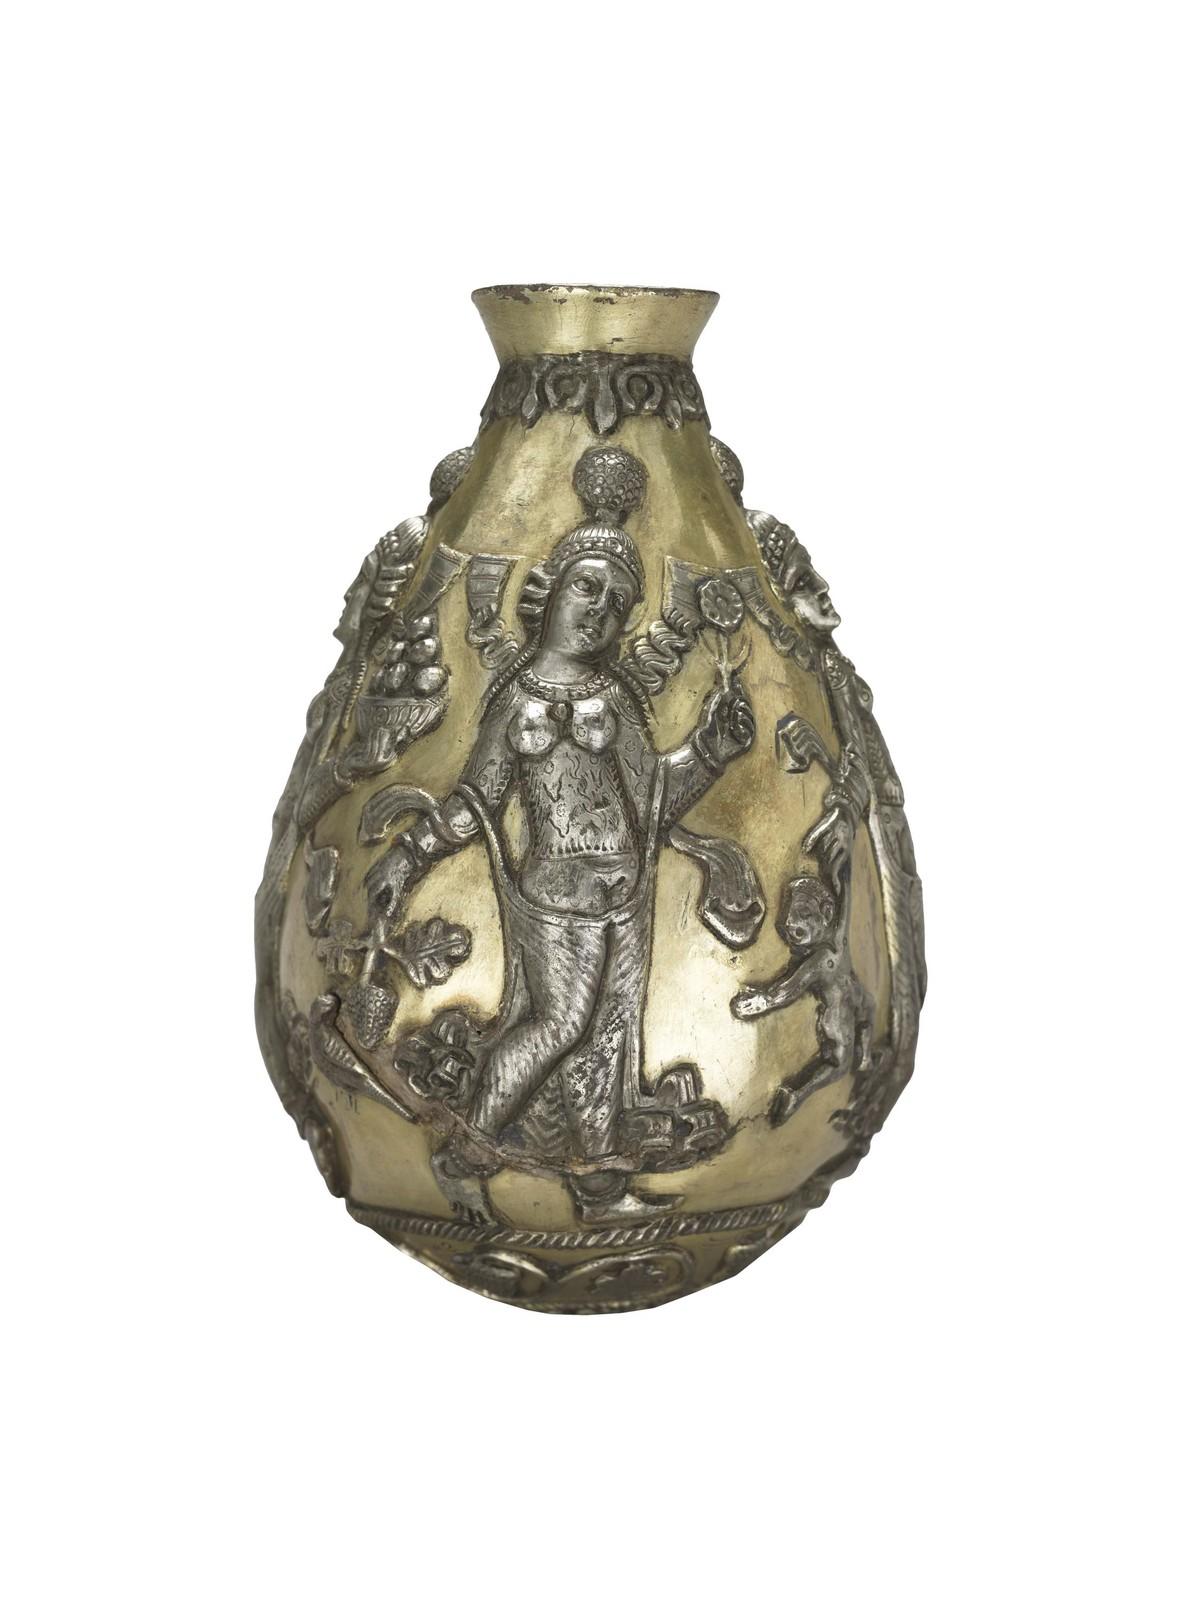 Représentation d'Anãhitã sur un vase du IVe ou VIe siècle.